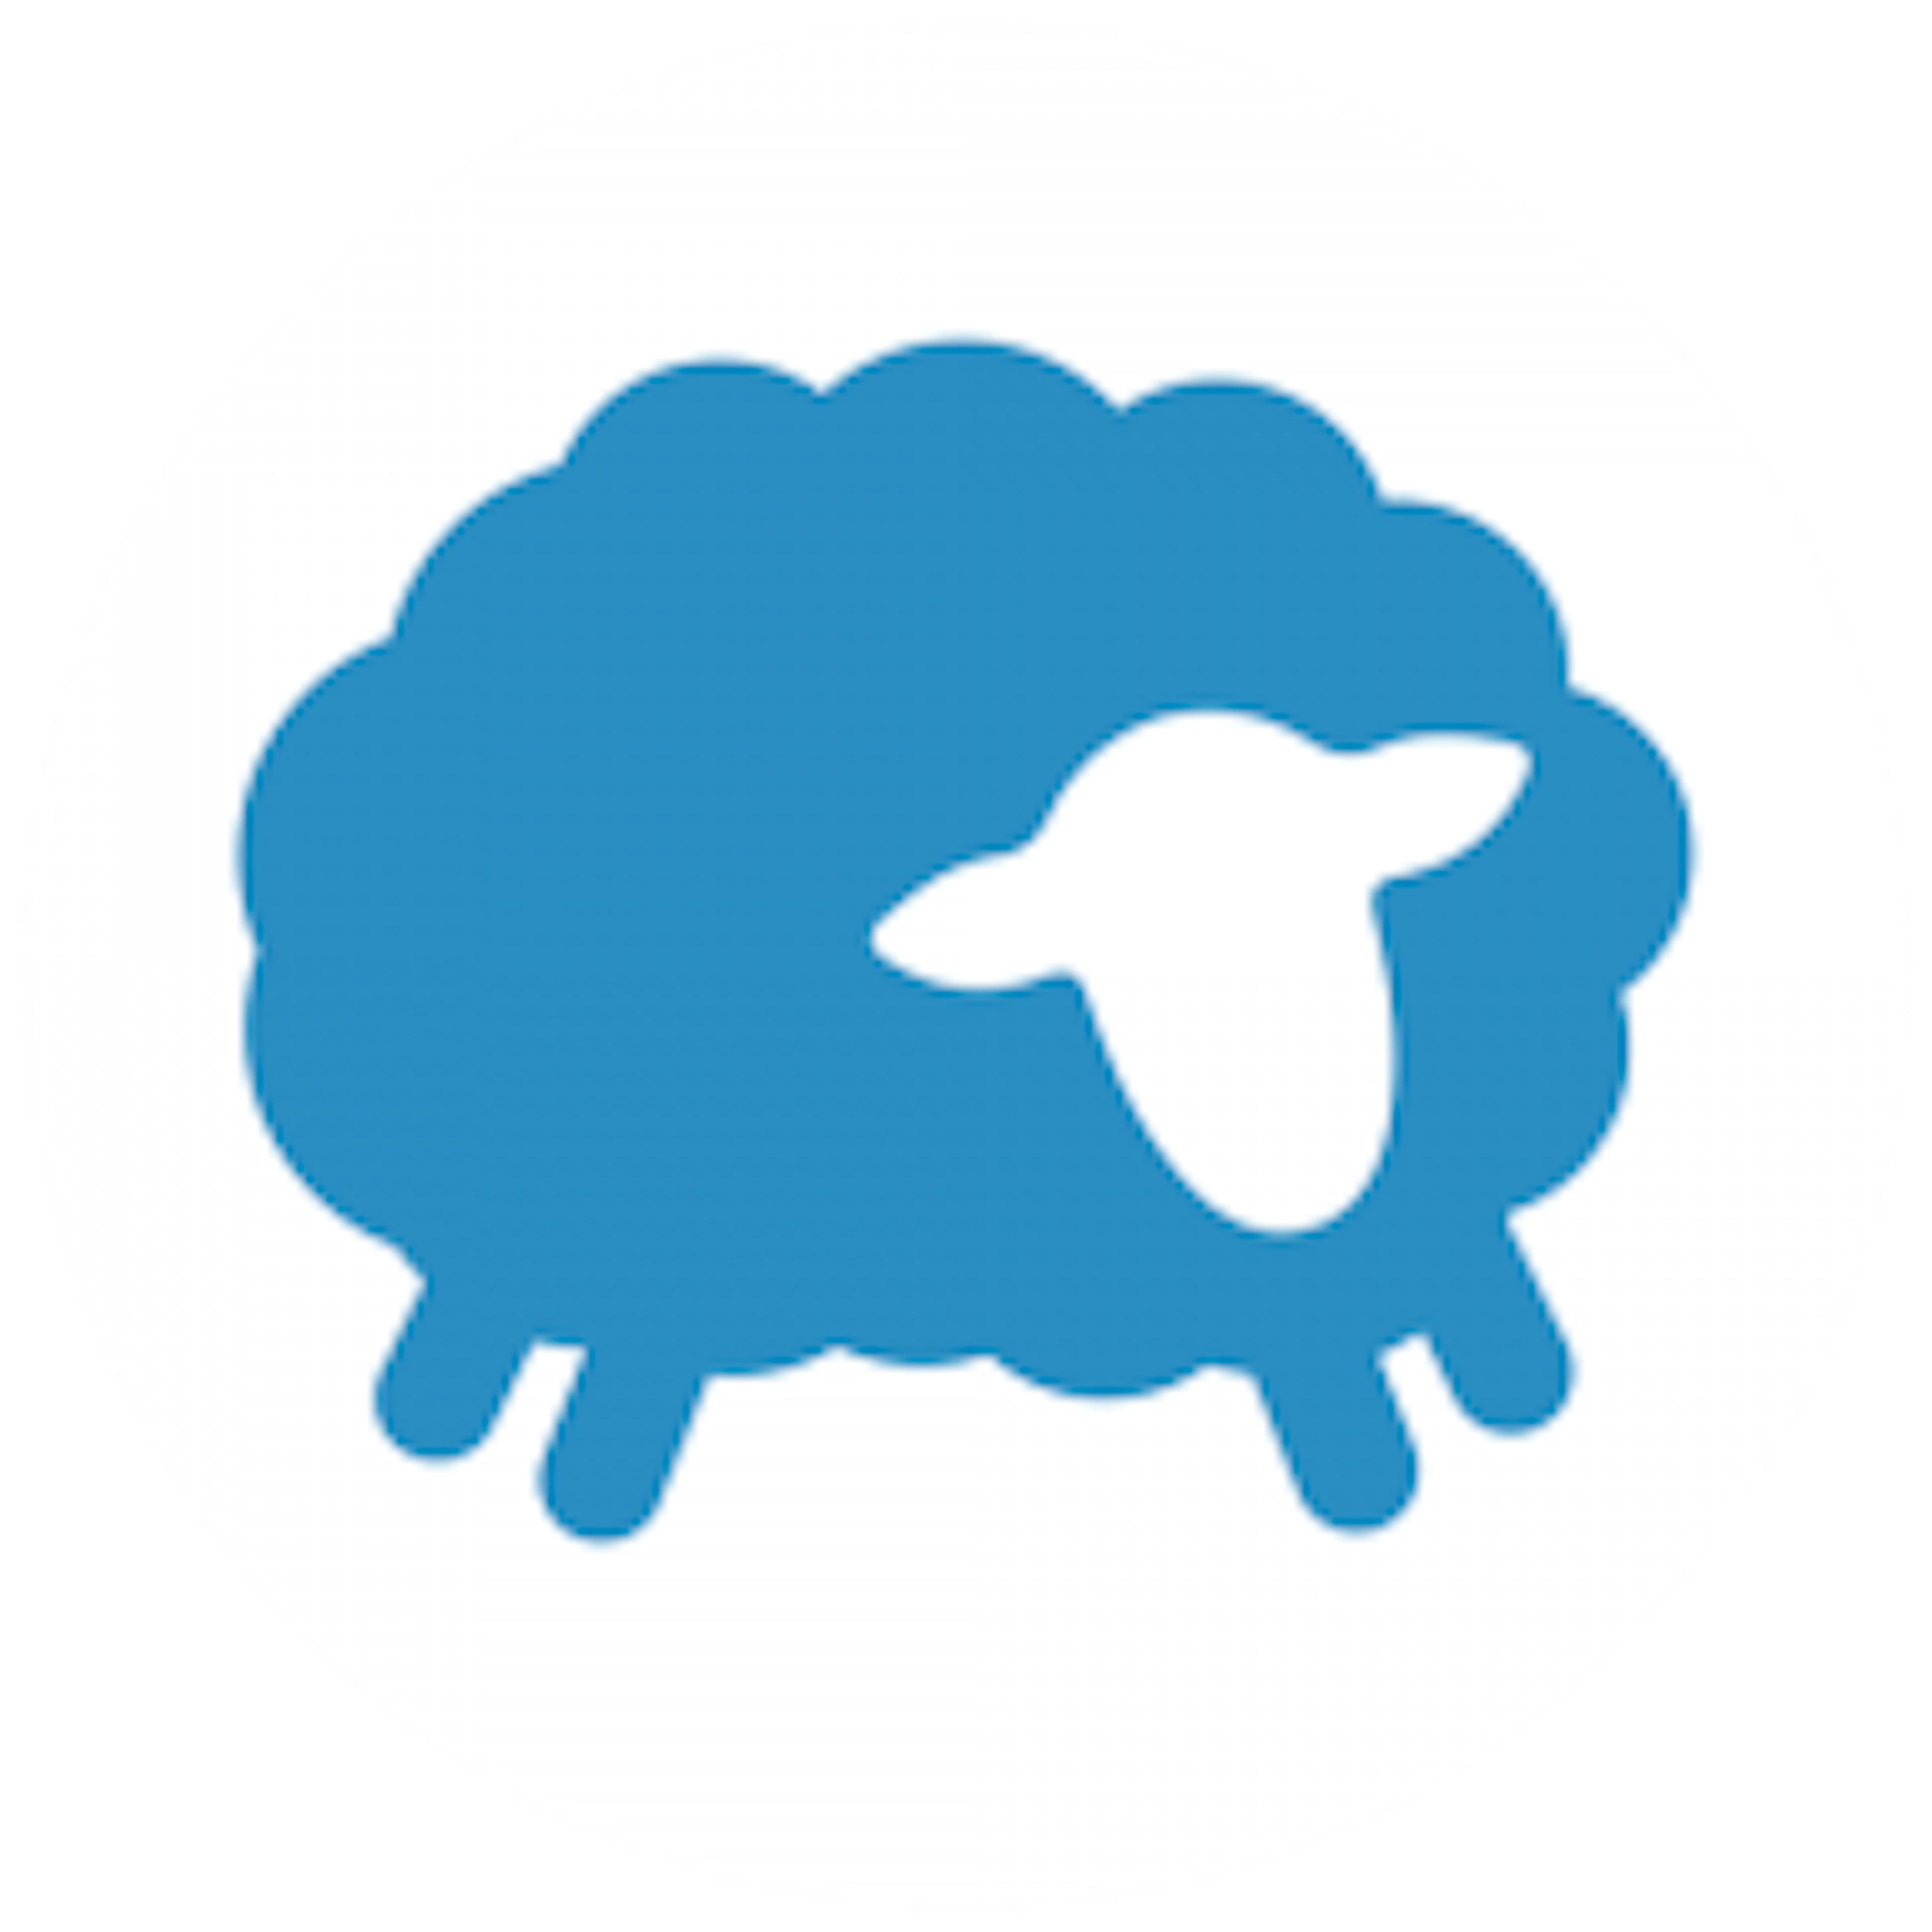 Flocknote Logo